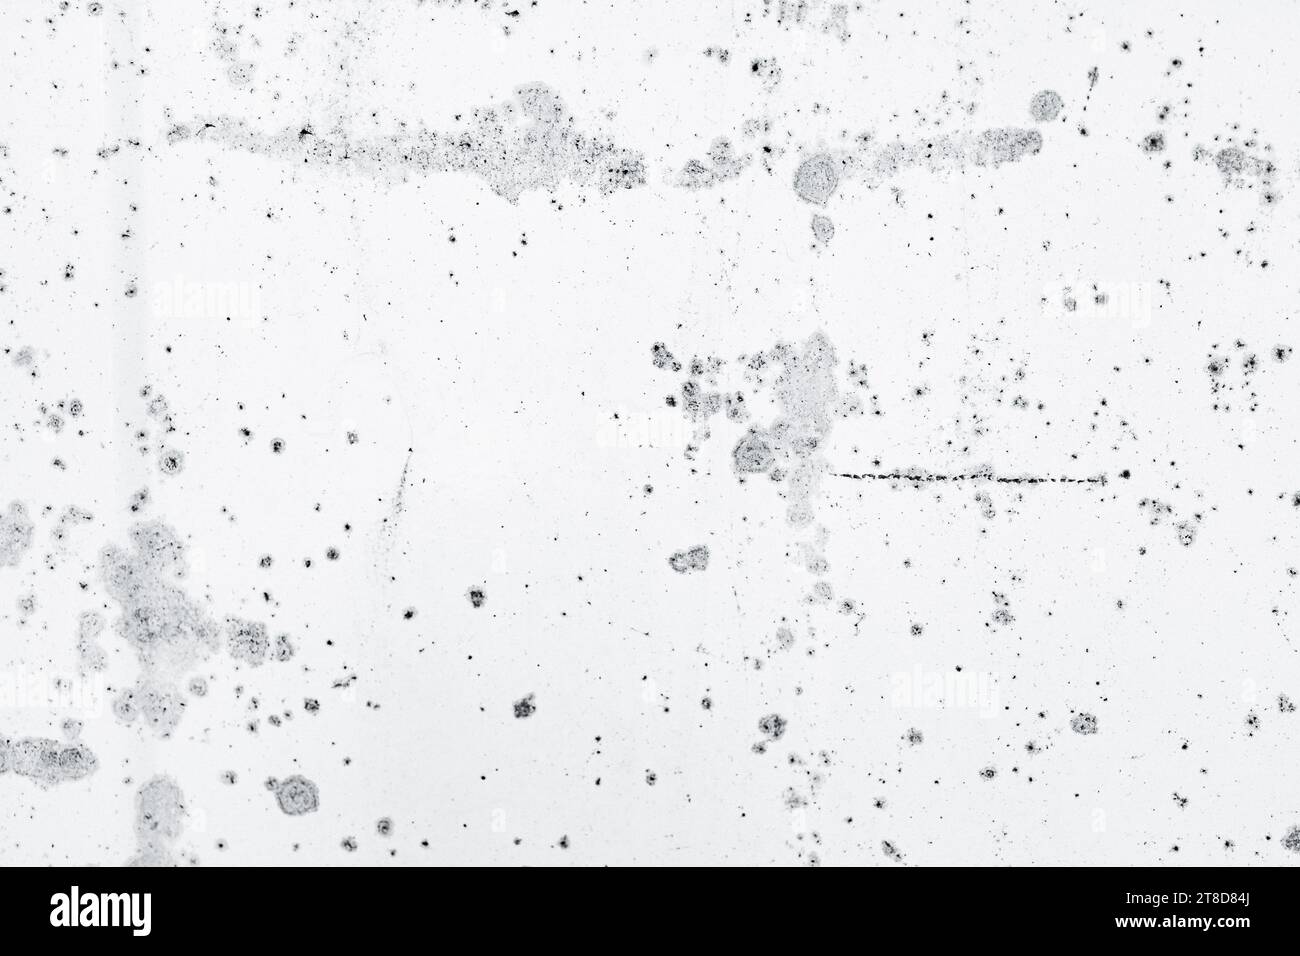 Un mur texturé blanc et gris avec un motif de points noirs Banque D'Images